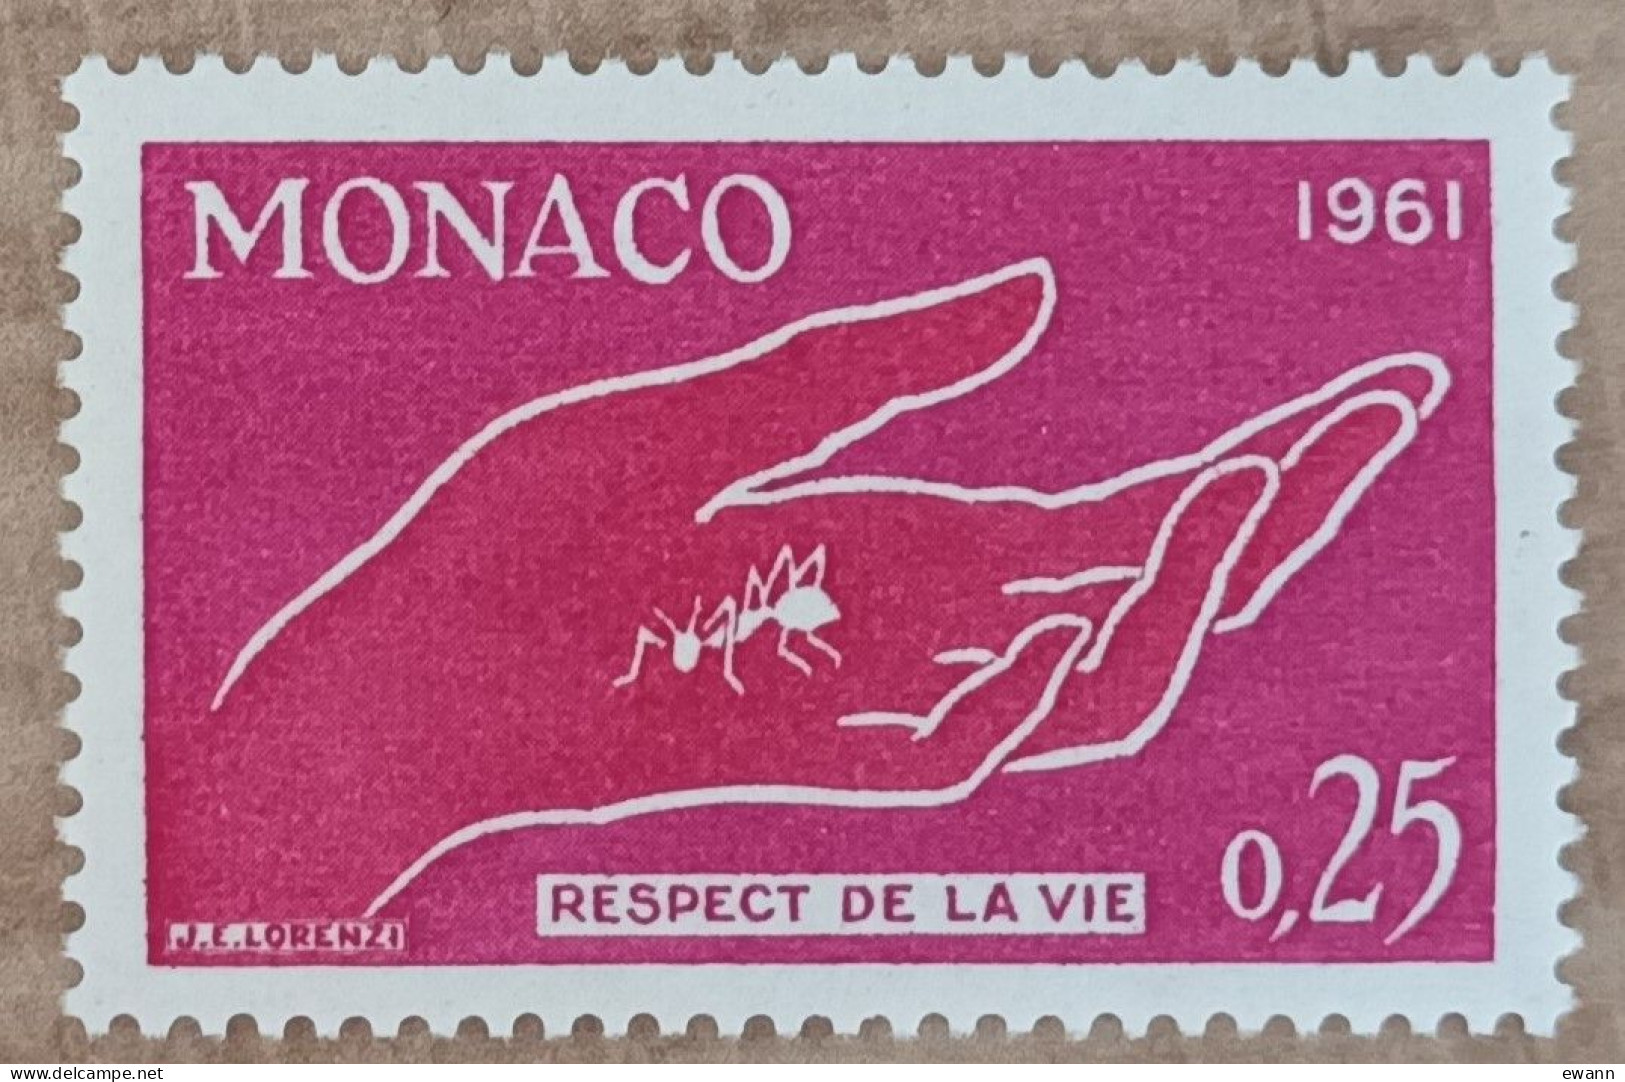 Monaco - YT N°554 - Campagne Pour Le Respect De La Vie Animale - 1961 - Neuf - Ongebruikt